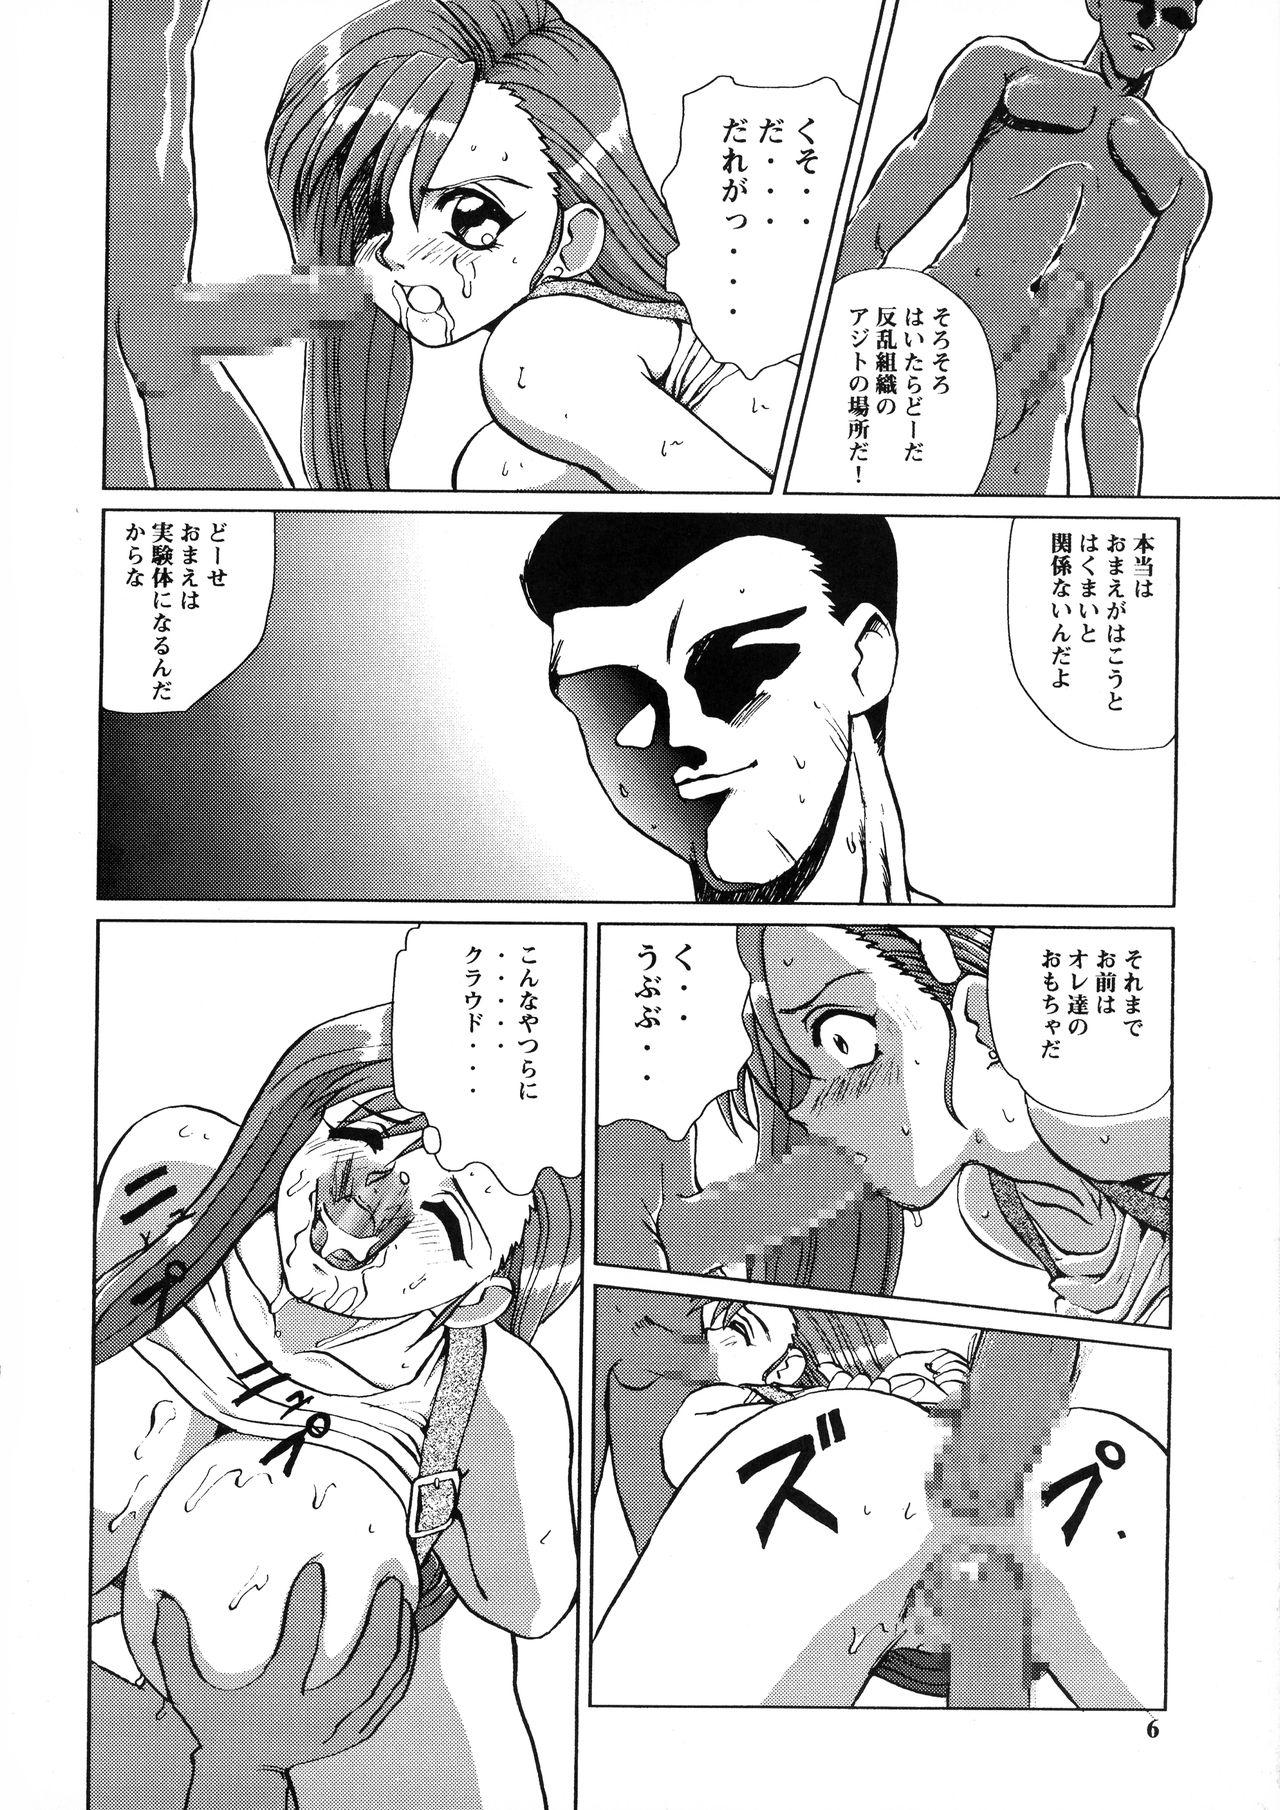 Hotwife Bakuchichi S2 - Street fighter Final fantasy vii Sexteen - Page 6